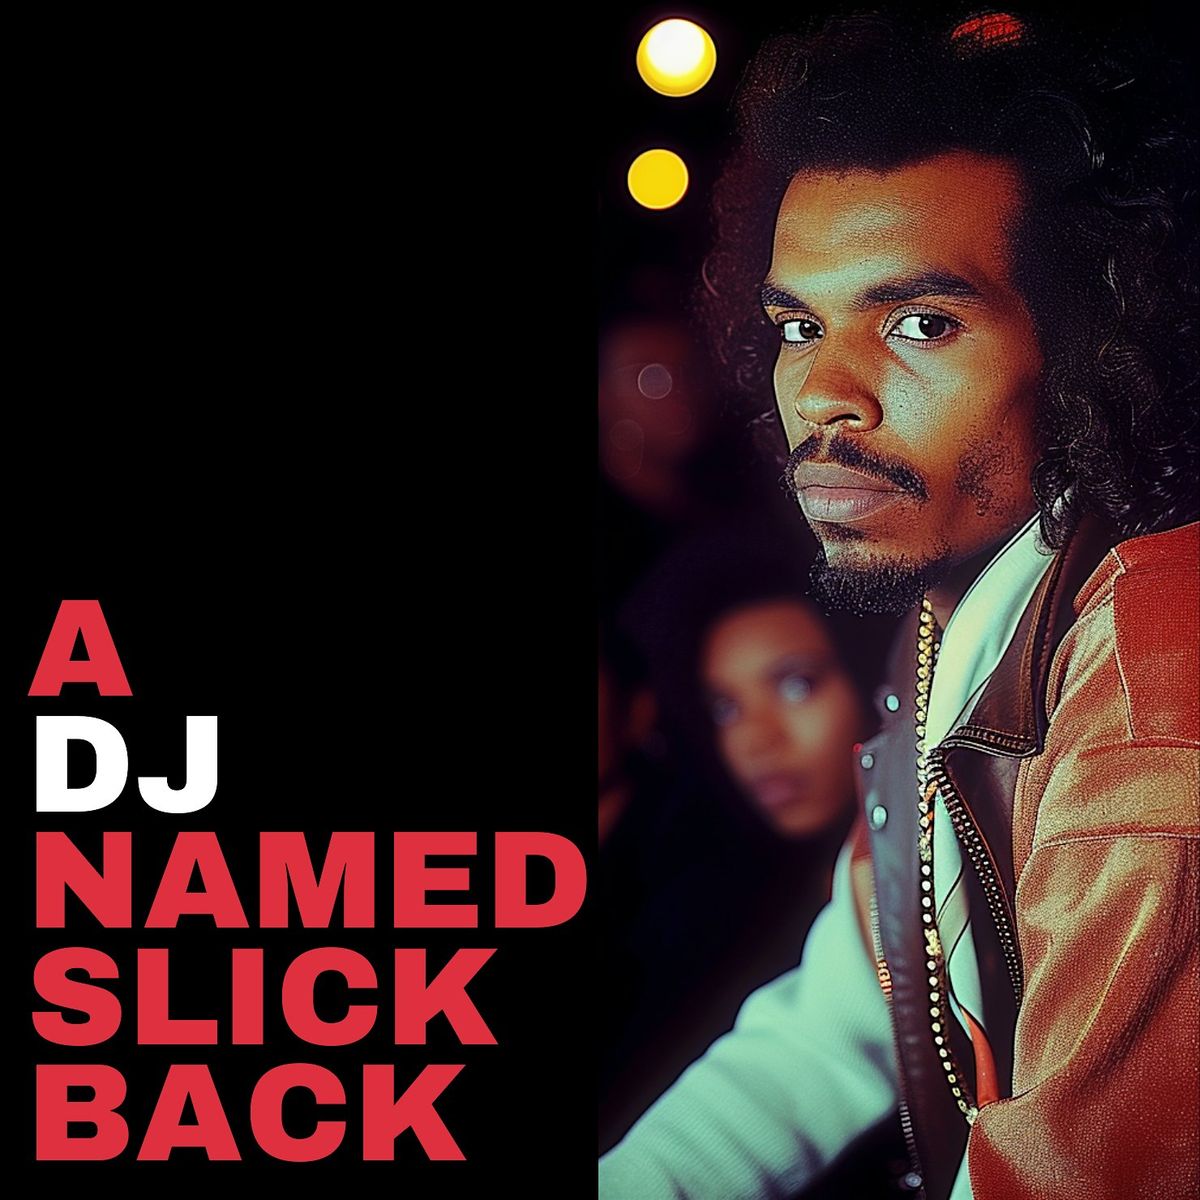 A DJ NAMED SLICK BACK Vinyl Release Hang